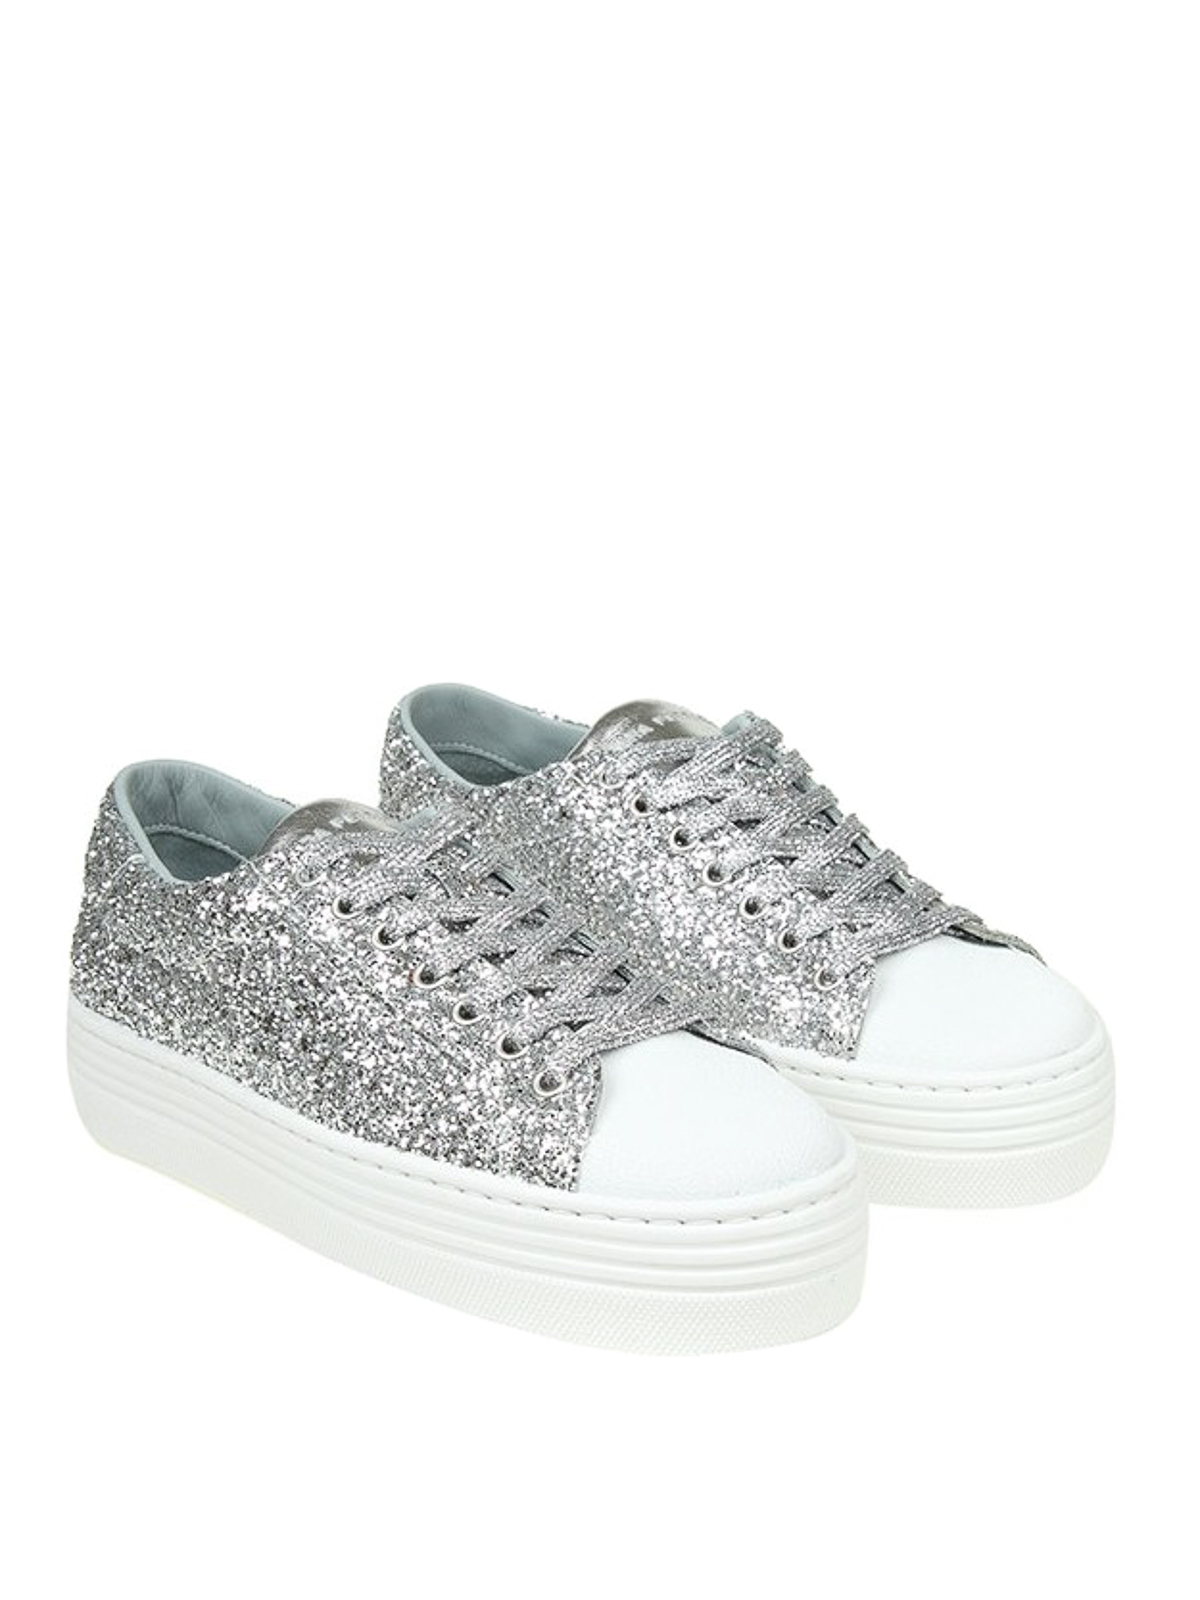 H-Brands Donna Scarpe Sneakers Sneakers con glitter Sneaker alta Chiara Ferragni in pelle bianca e glitter argento 